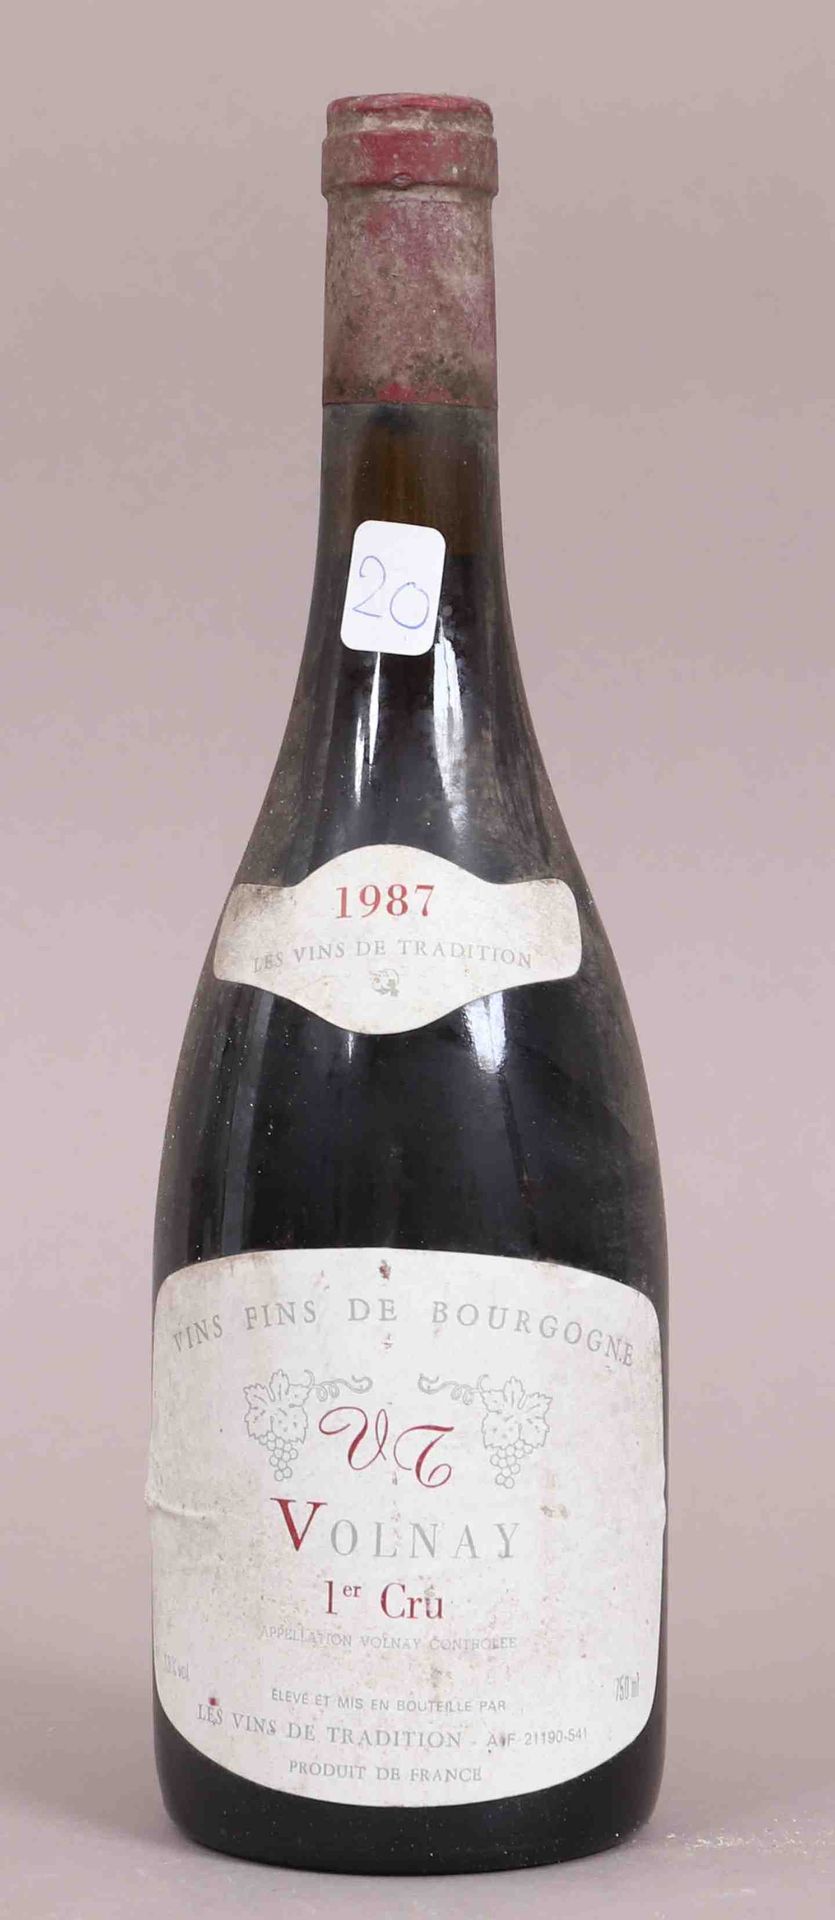 Null Volnay 1er Cru (x1) 
Les vins de tradition 
1987 
0,75L